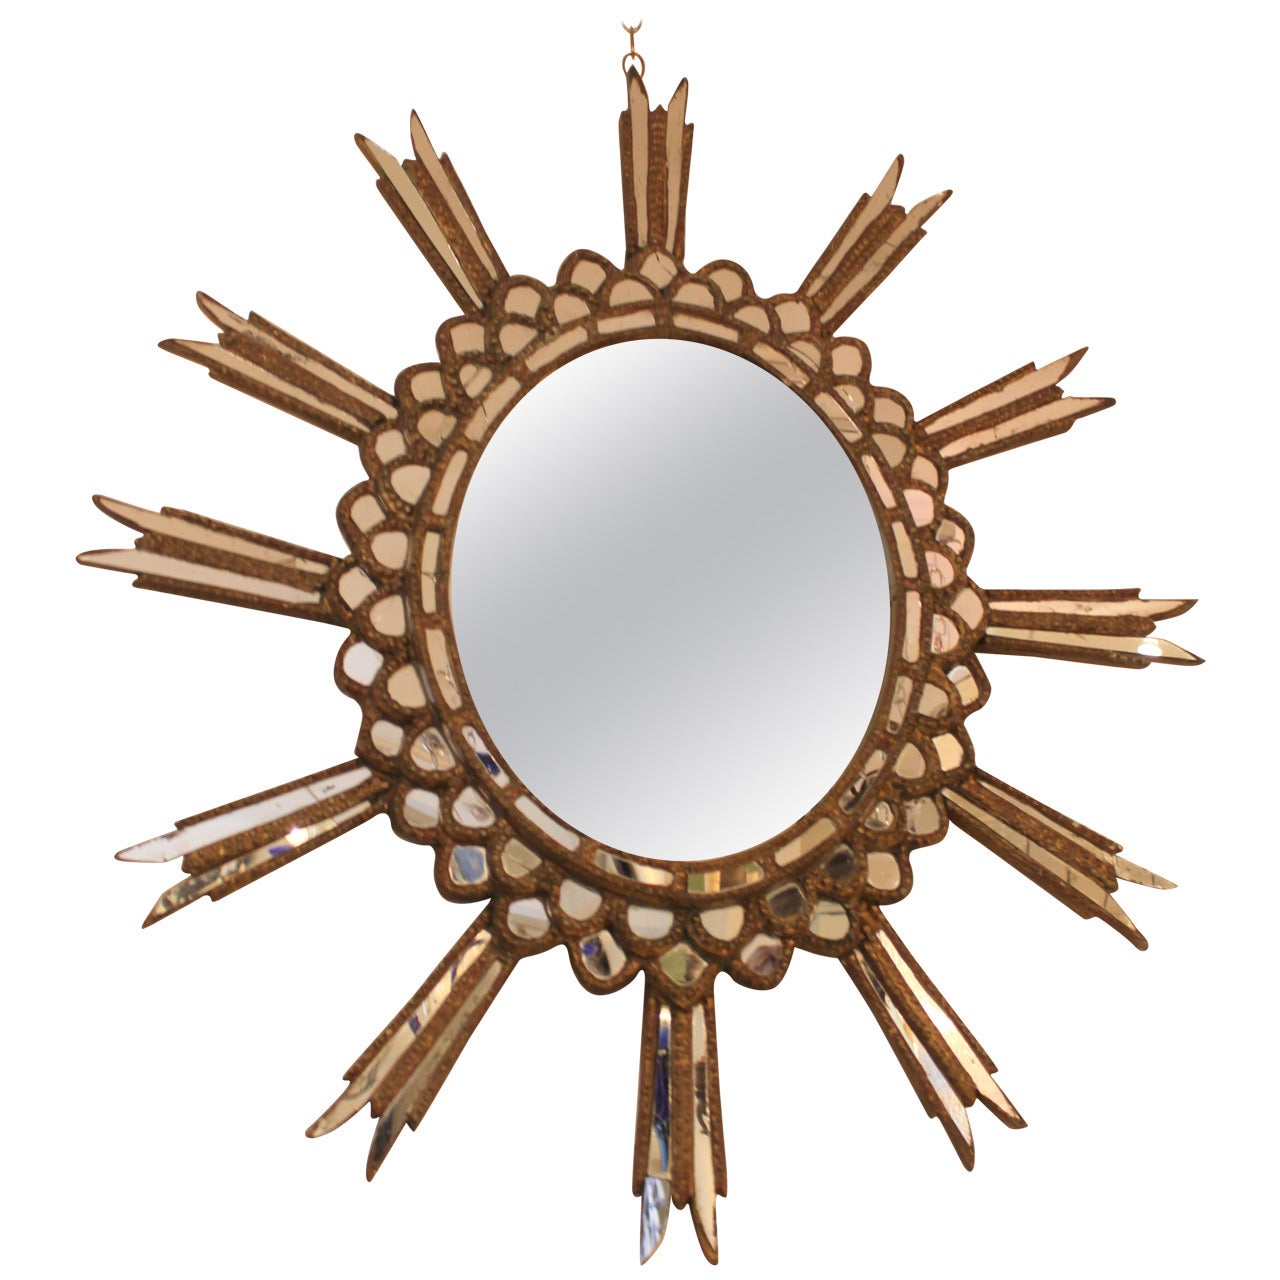 1940s Argentine Starburst Mirror